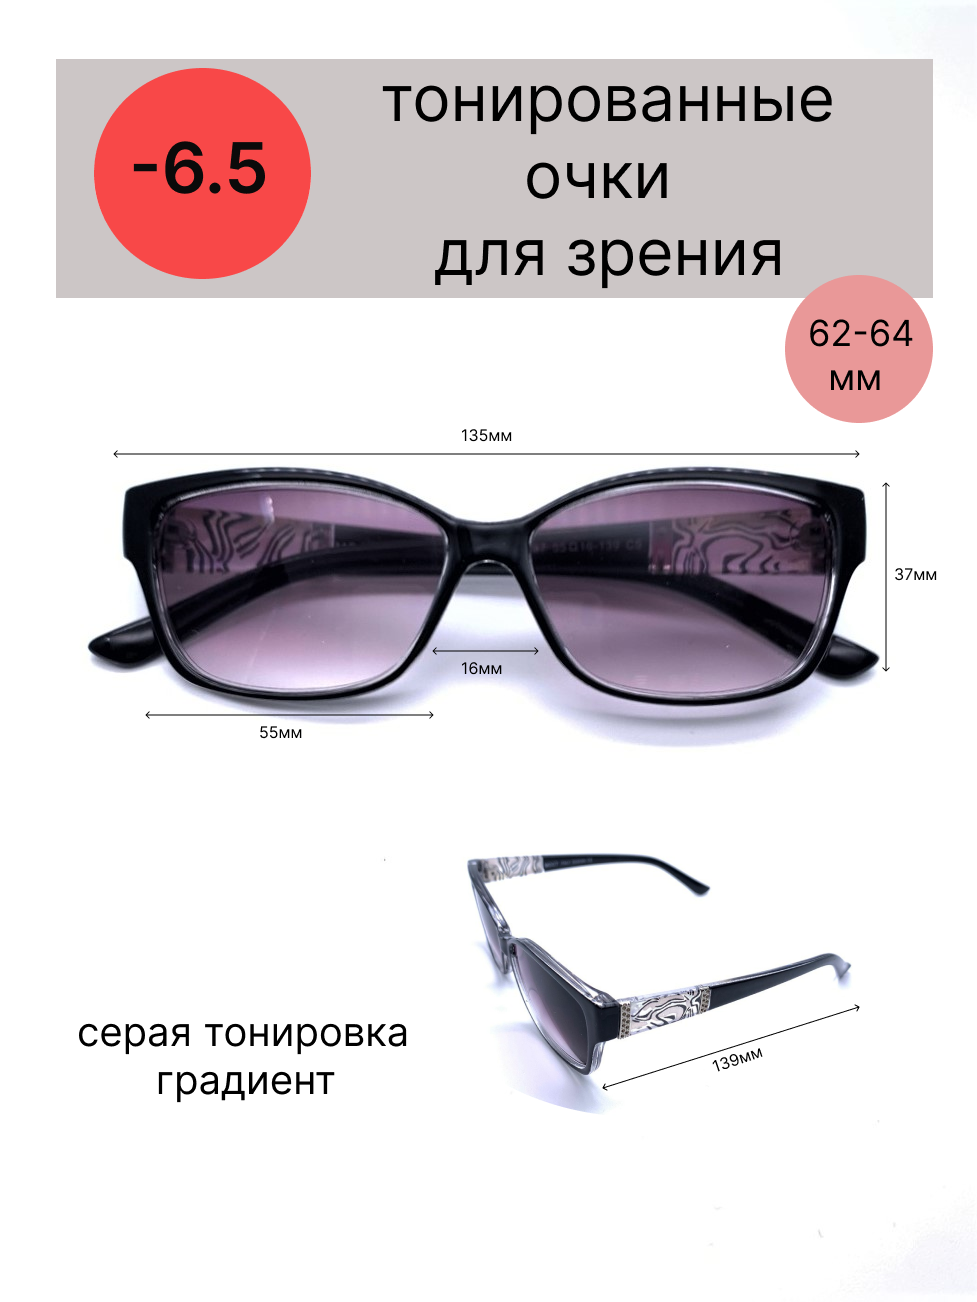 Тонированные очки с диоптриями-6.5